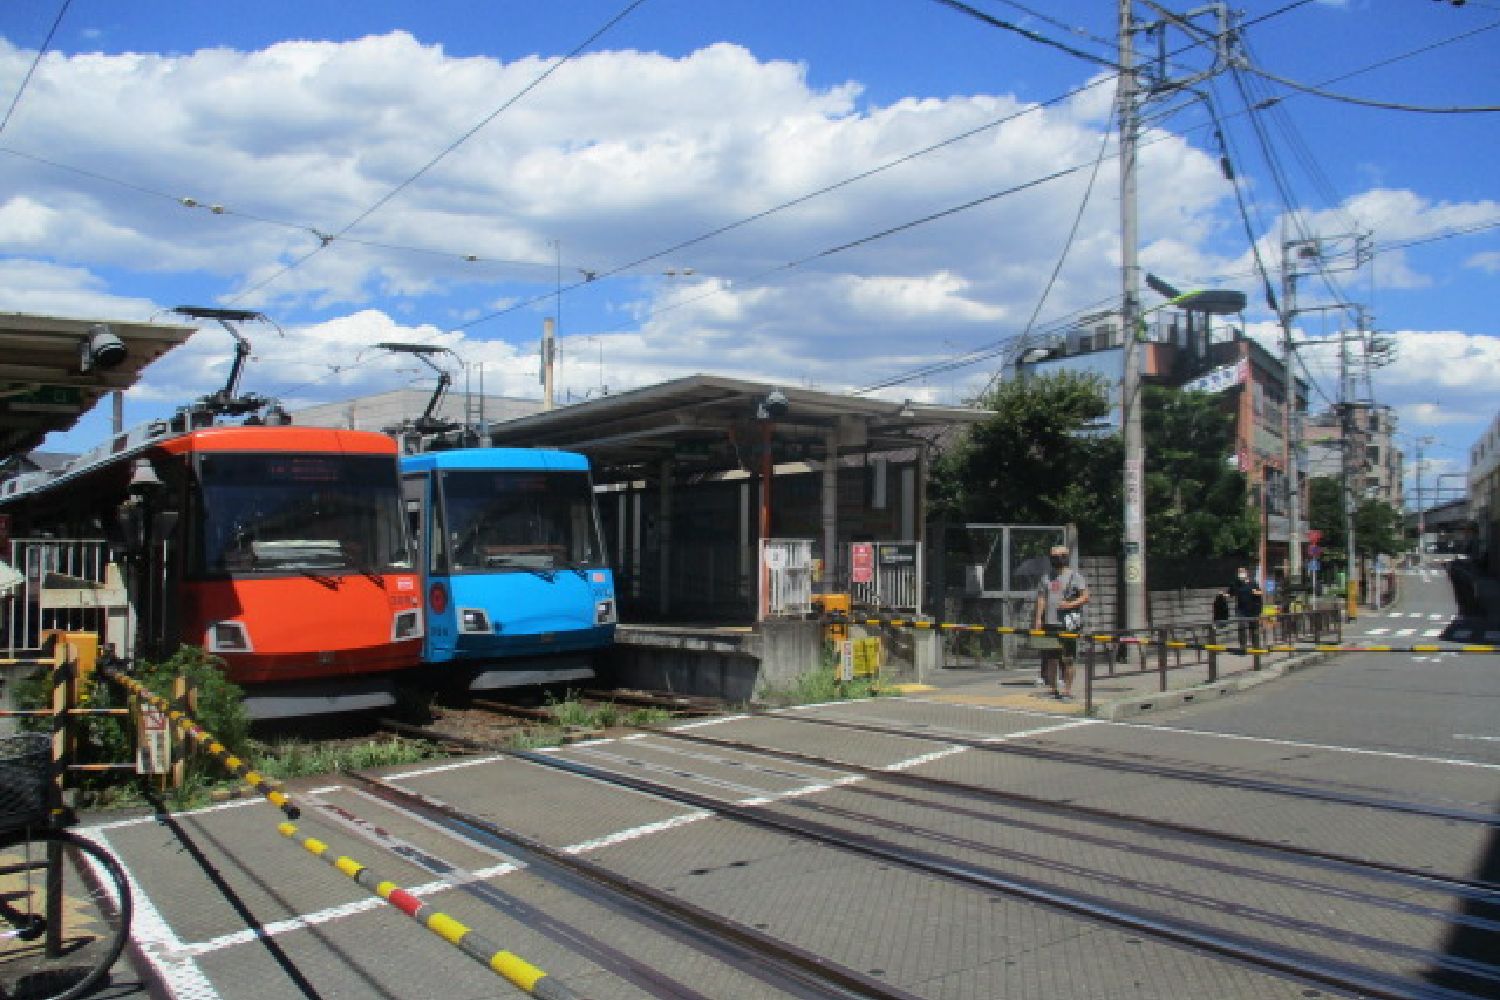 東急世田谷線は東京都内に2つしかない路面電車のひとつ